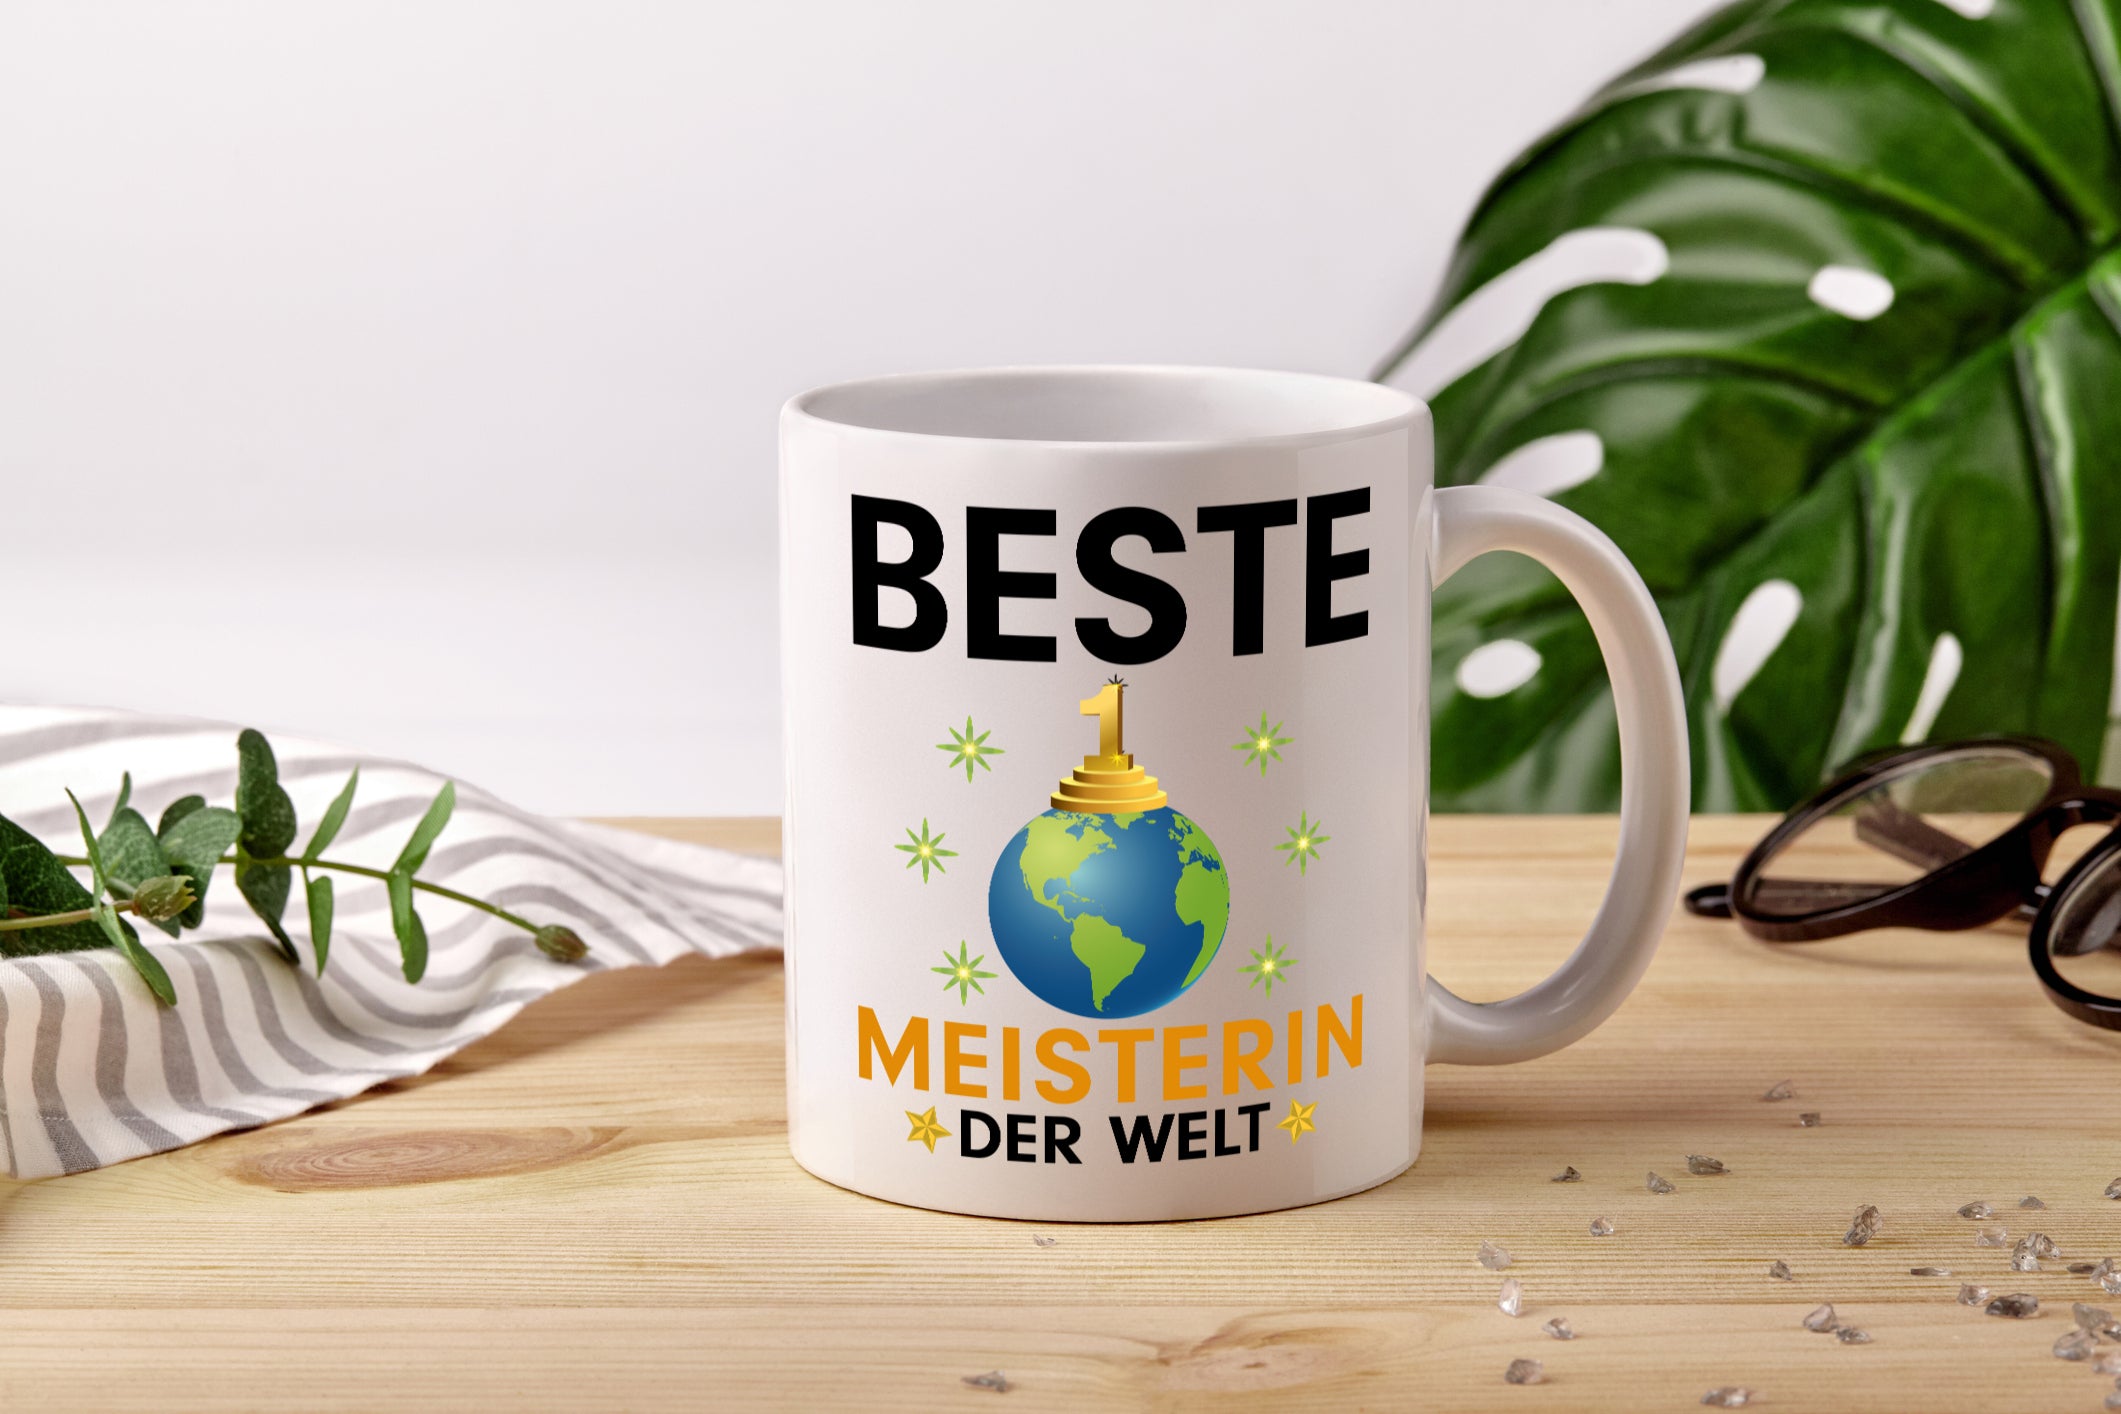 Welt Beste Meisterin | Meisterbrief - Tasse Weiß - Kaffeetasse / Geschenk / Familie